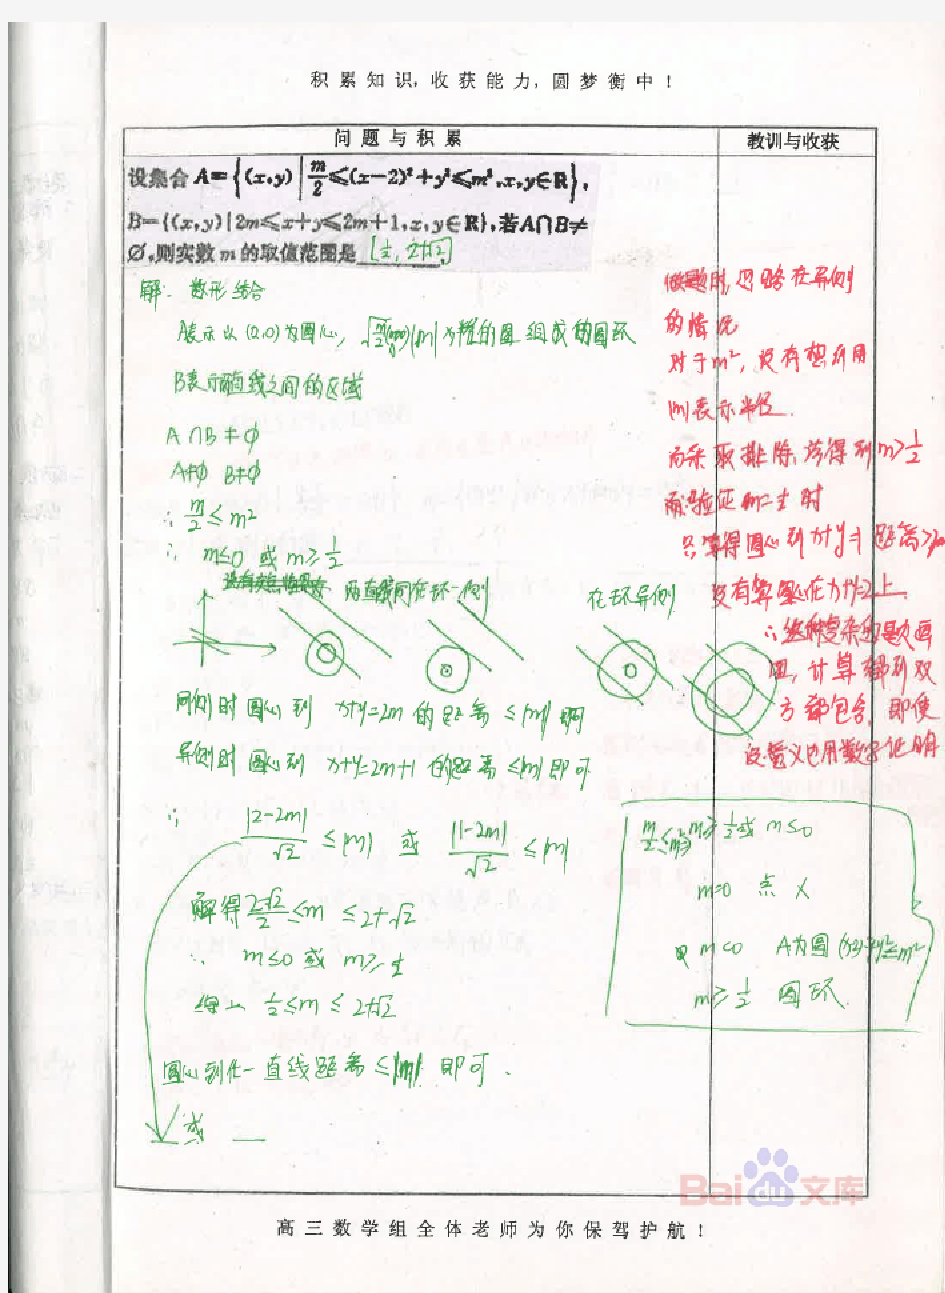 衡水中学理科学霸高中数学笔记01_2014高考状元笔记